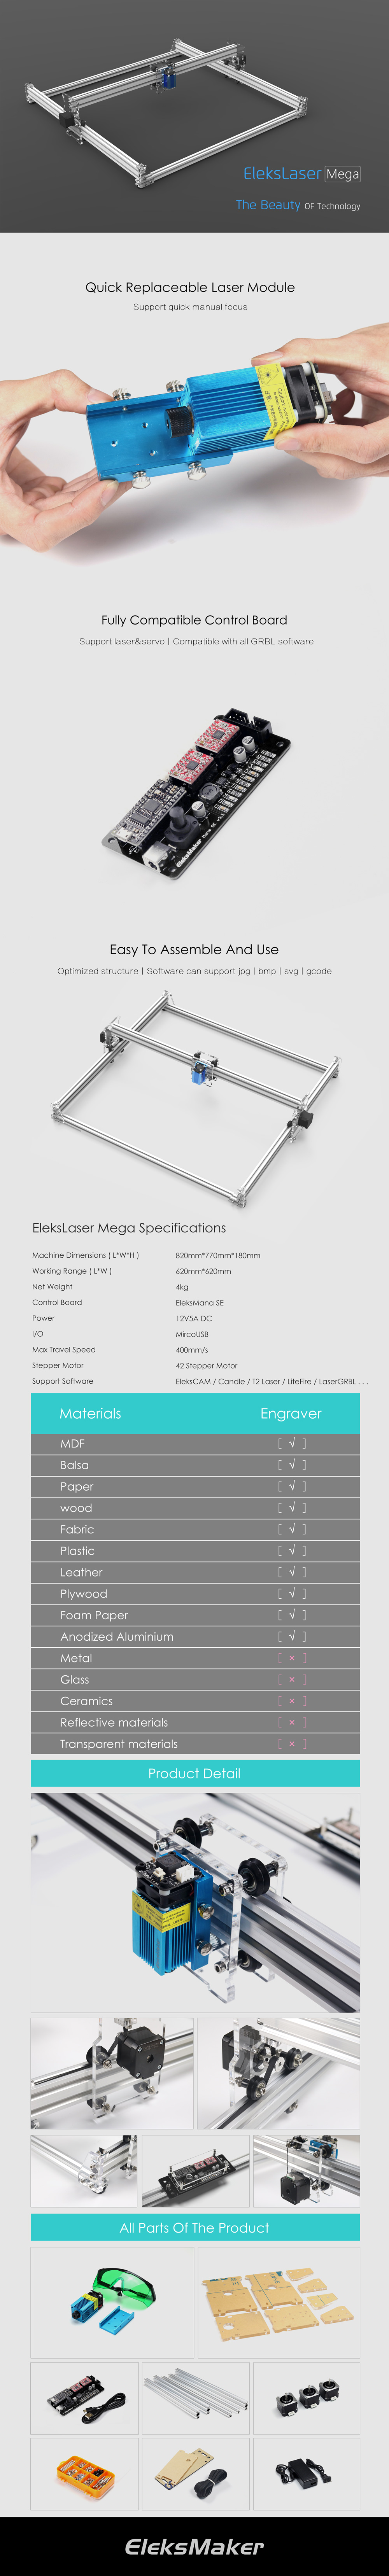 EleksMaker® EleksLaser-Mega 500mW/1600mW/2500mW Laser Engraving Machine CNC Laser Printer 10